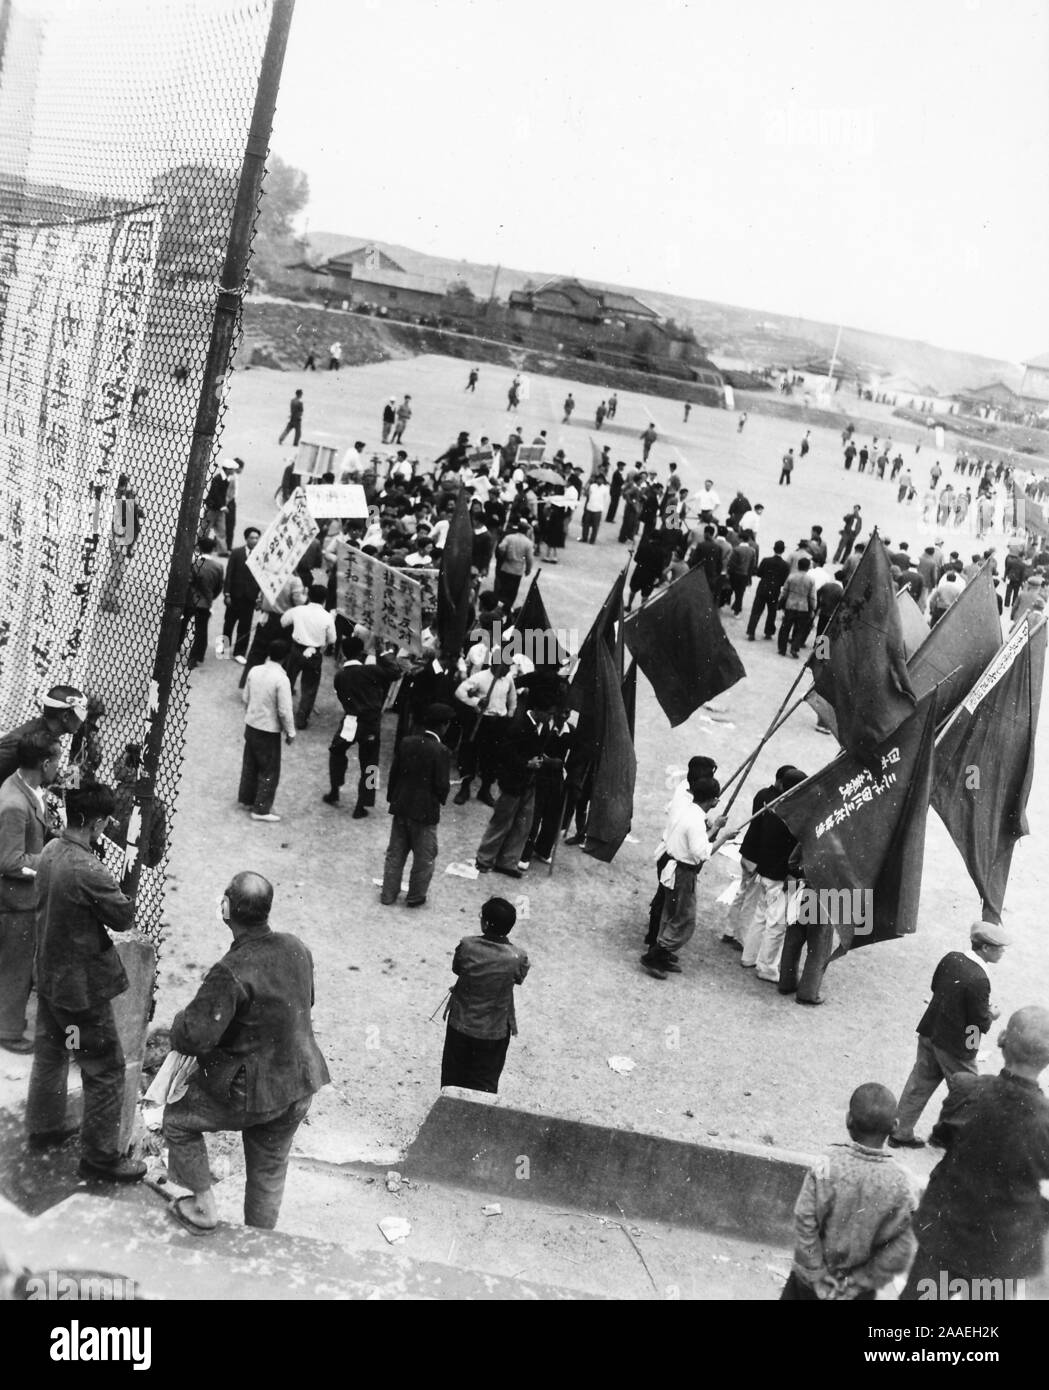 D'un grand angle de vue sur une foule de manifestants, certains portant des drapeaux et des pancartes, laissant un terrain de jeu urbain à la suite d'une manifestation syndicale du travail sur l'image, la Préfecture de Fukuoka, Japon, 1950. () Banque D'Images